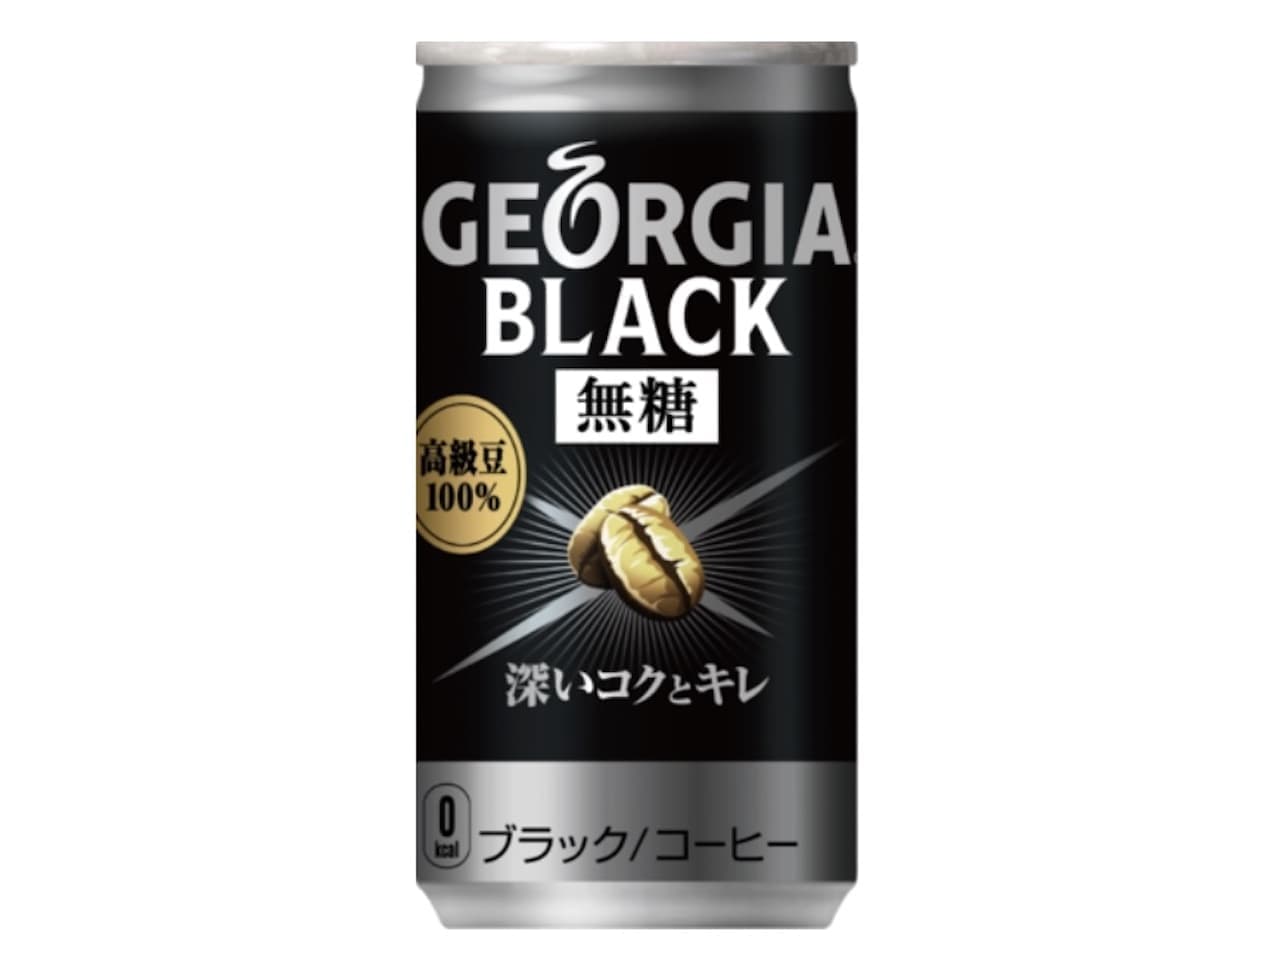 ブラック缶コーヒー「ジョージア ブラック」